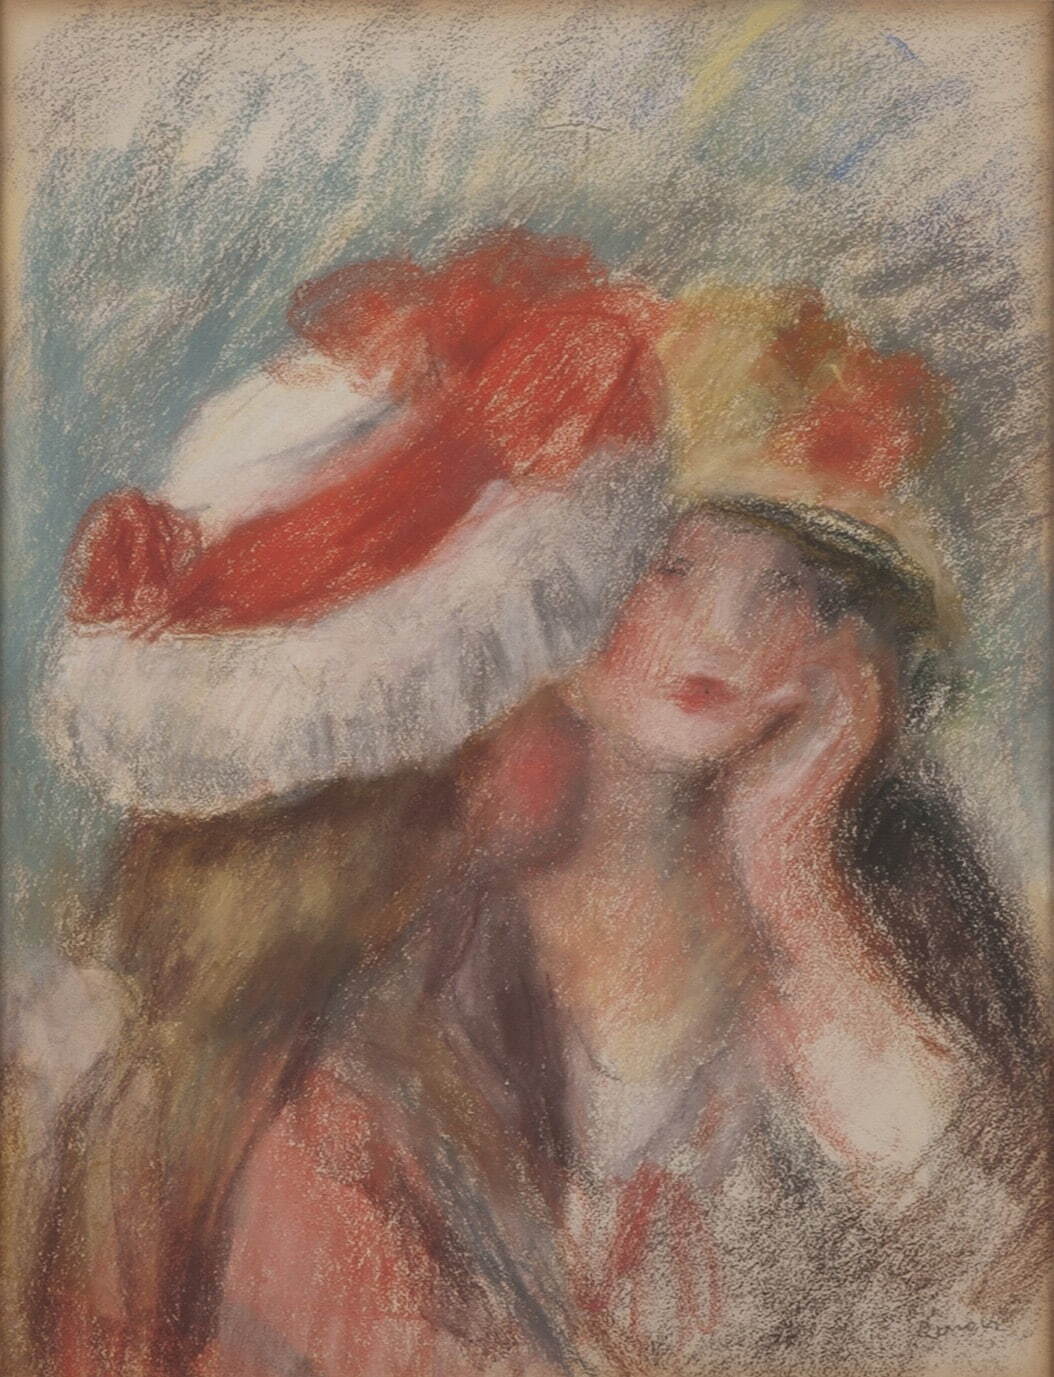 ピエール＝オーギュスト・ルノワール 《帽子を被った二人の少女》 1890年頃
パナソニック ホールディングス株式会社蔵